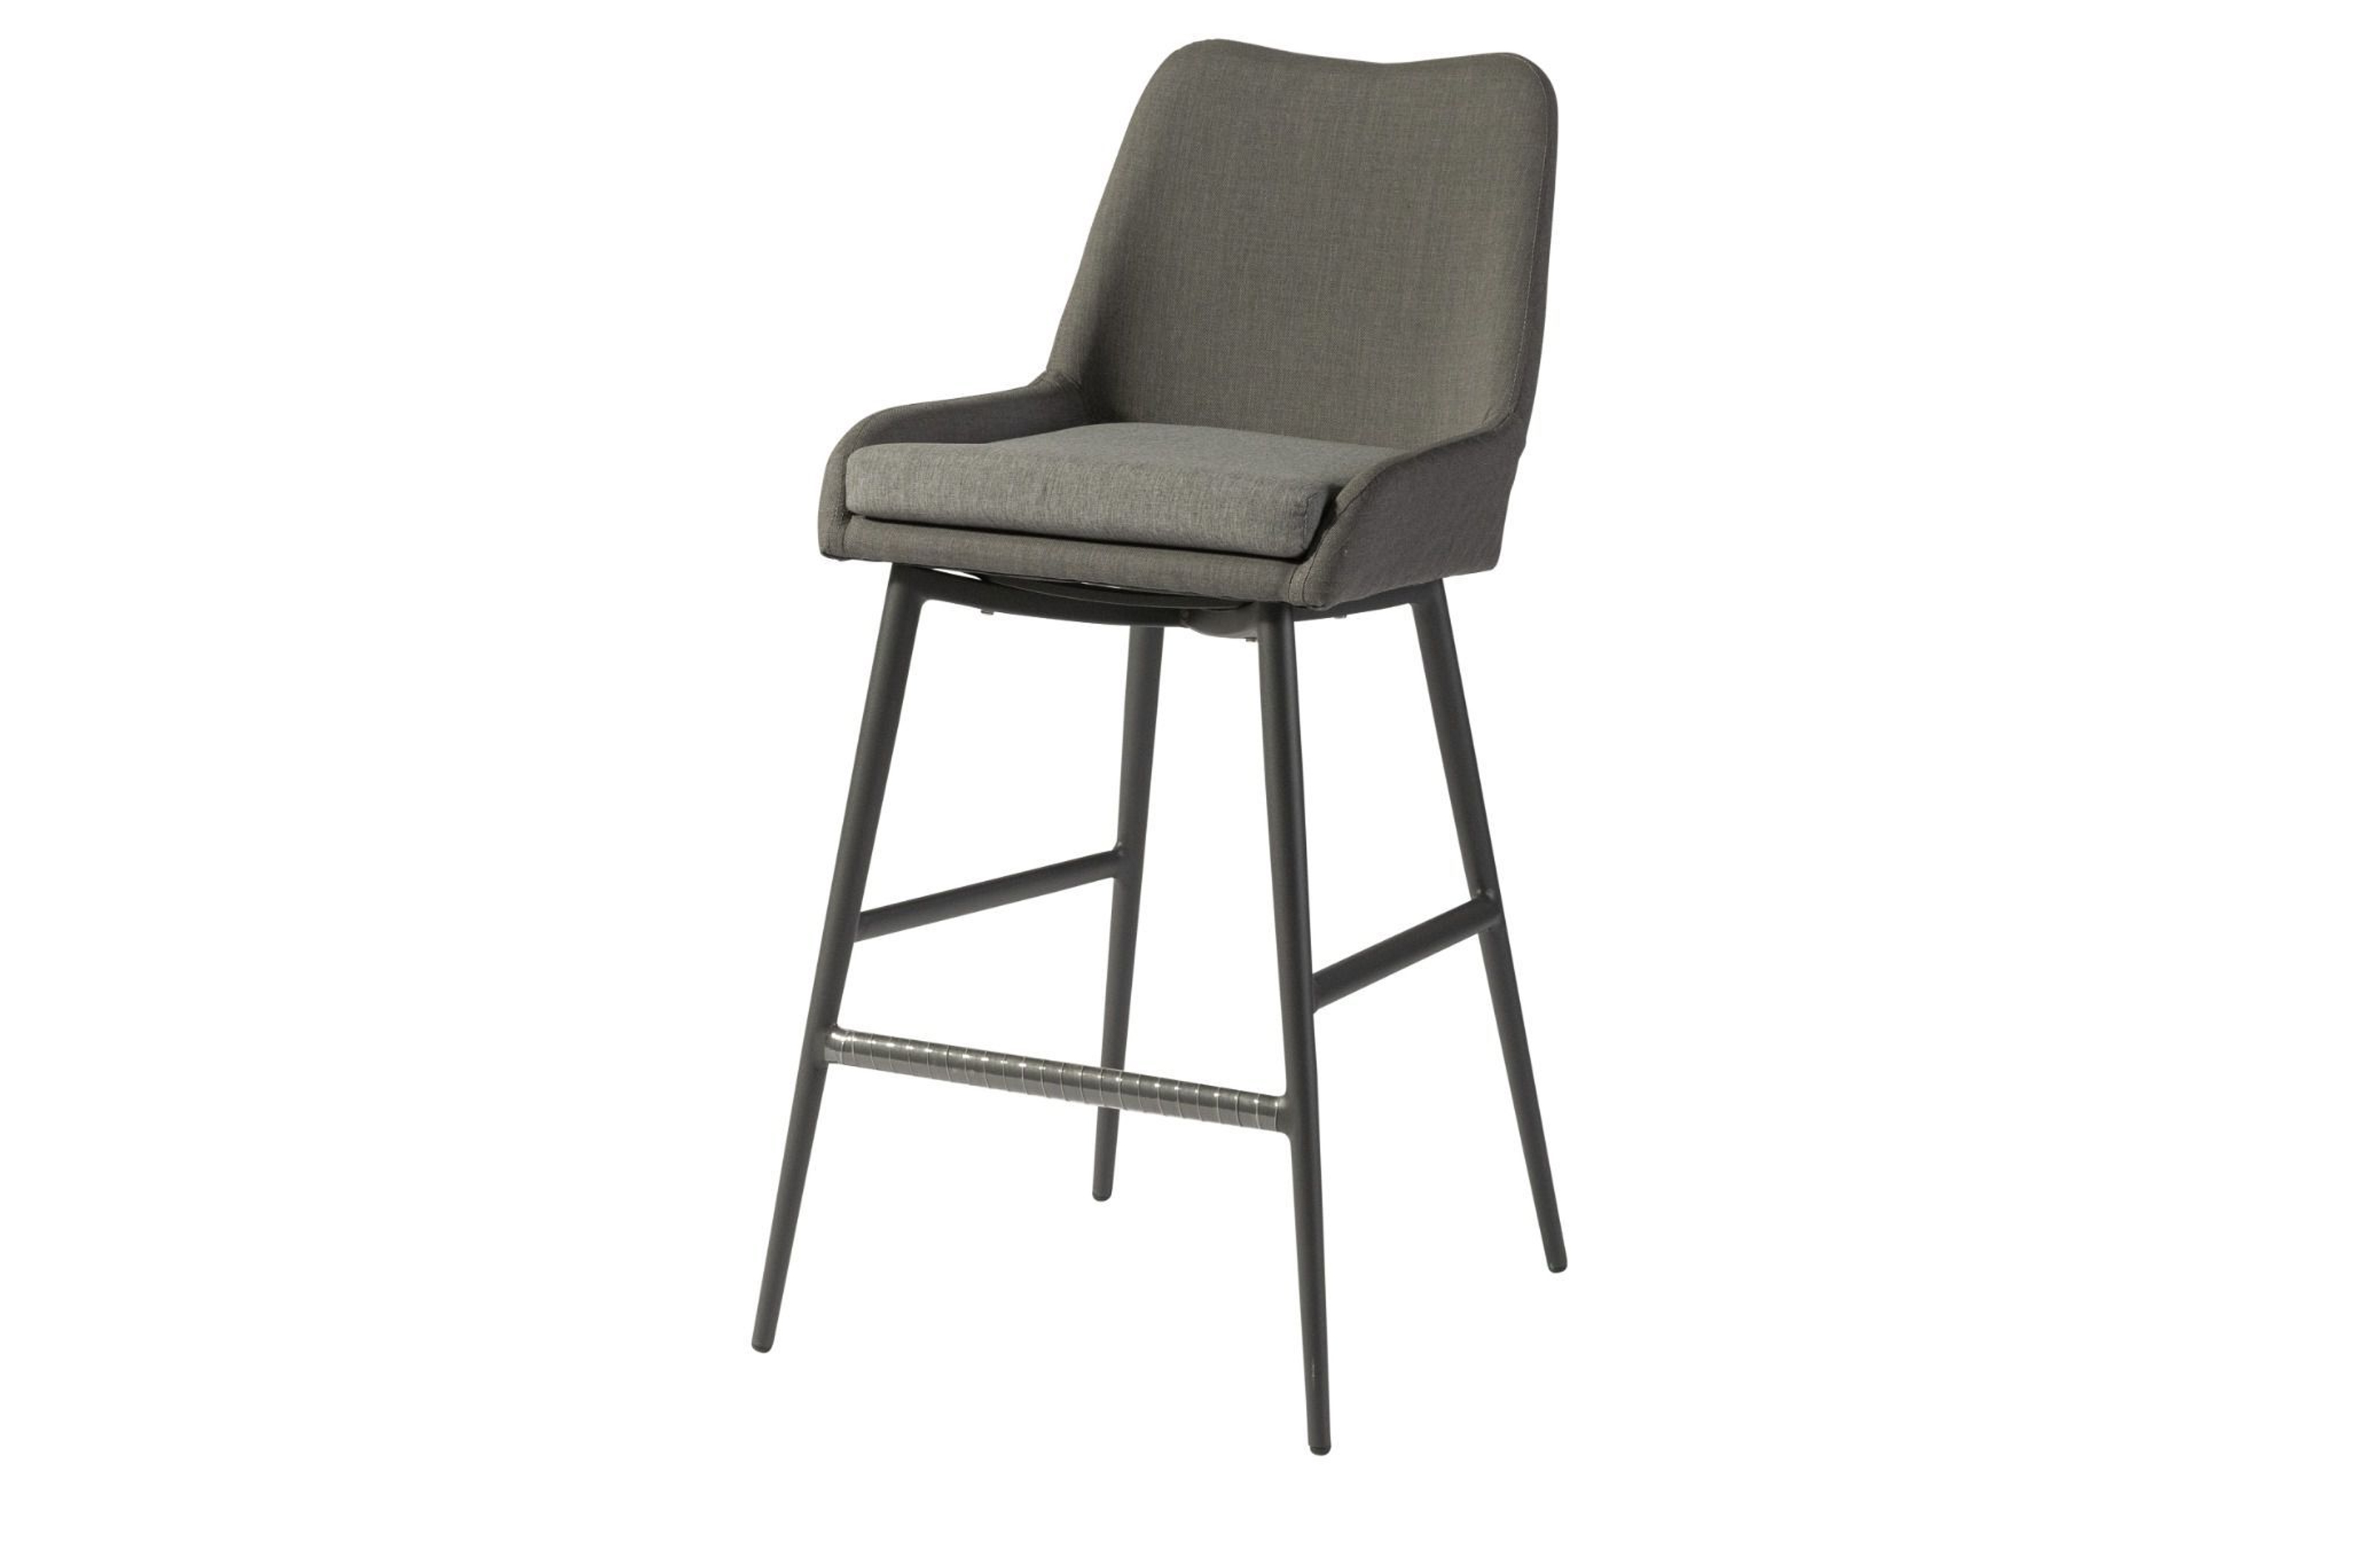 EXOTAN Domino barstol til haven, m. ryglæn og fodstøtte - stengrå stof og aluminium